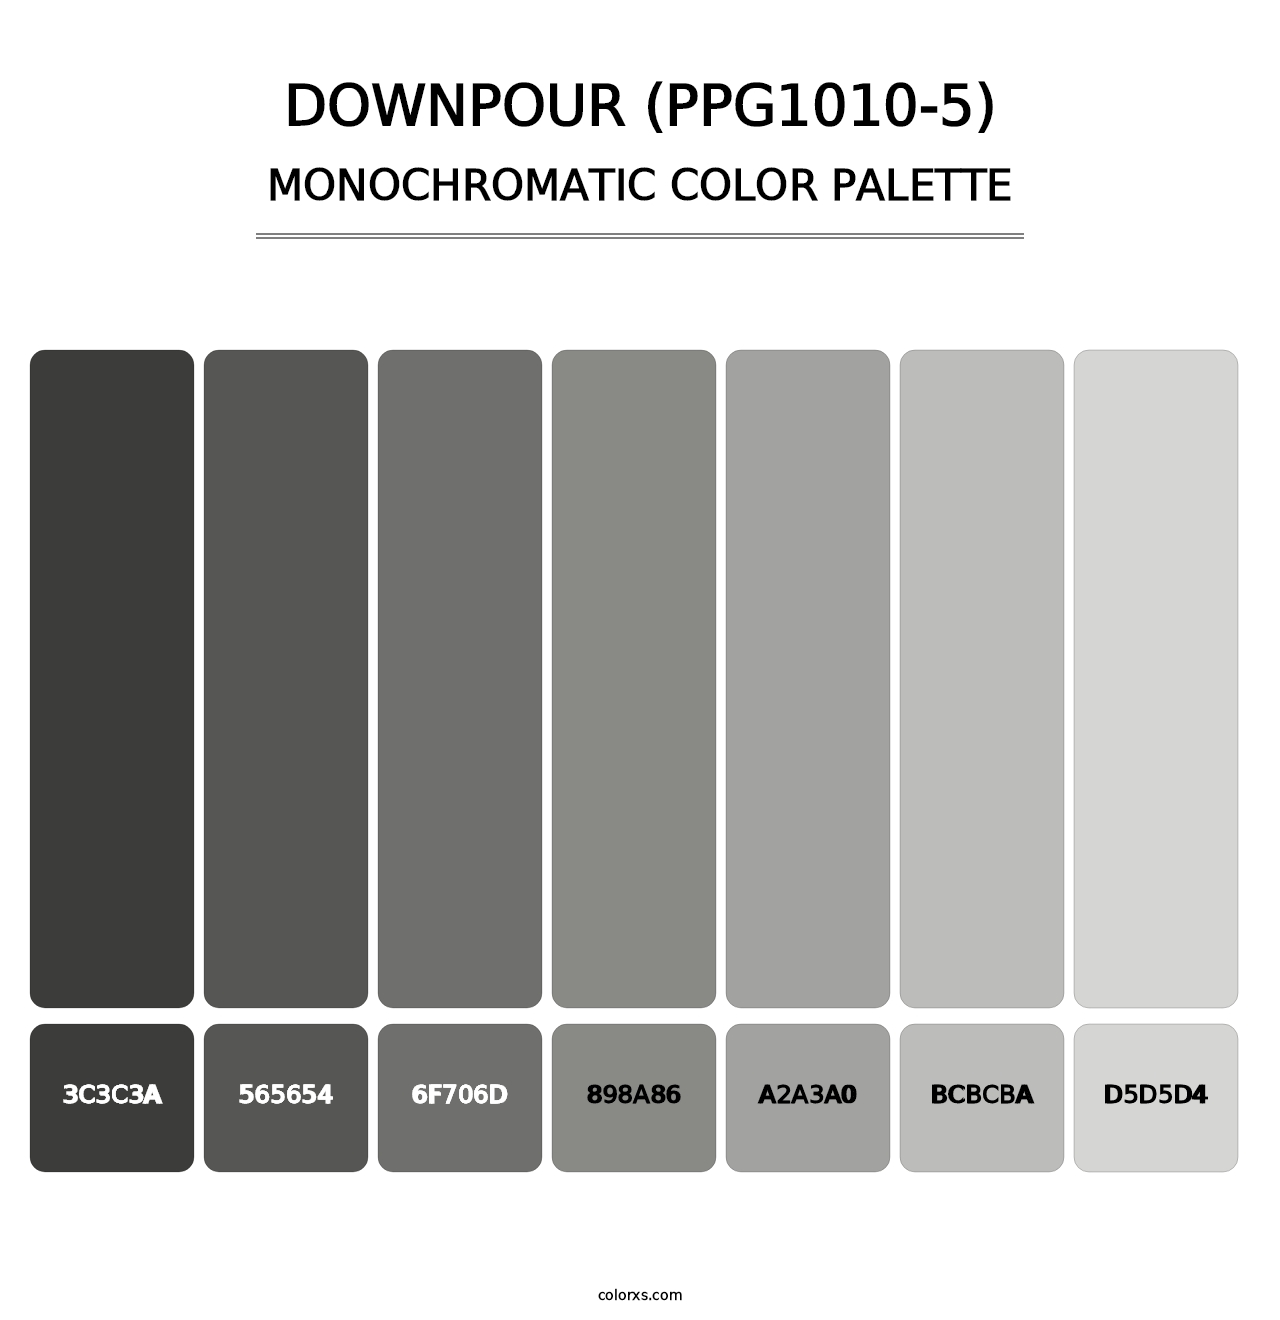 Downpour (PPG1010-5) - Monochromatic Color Palette